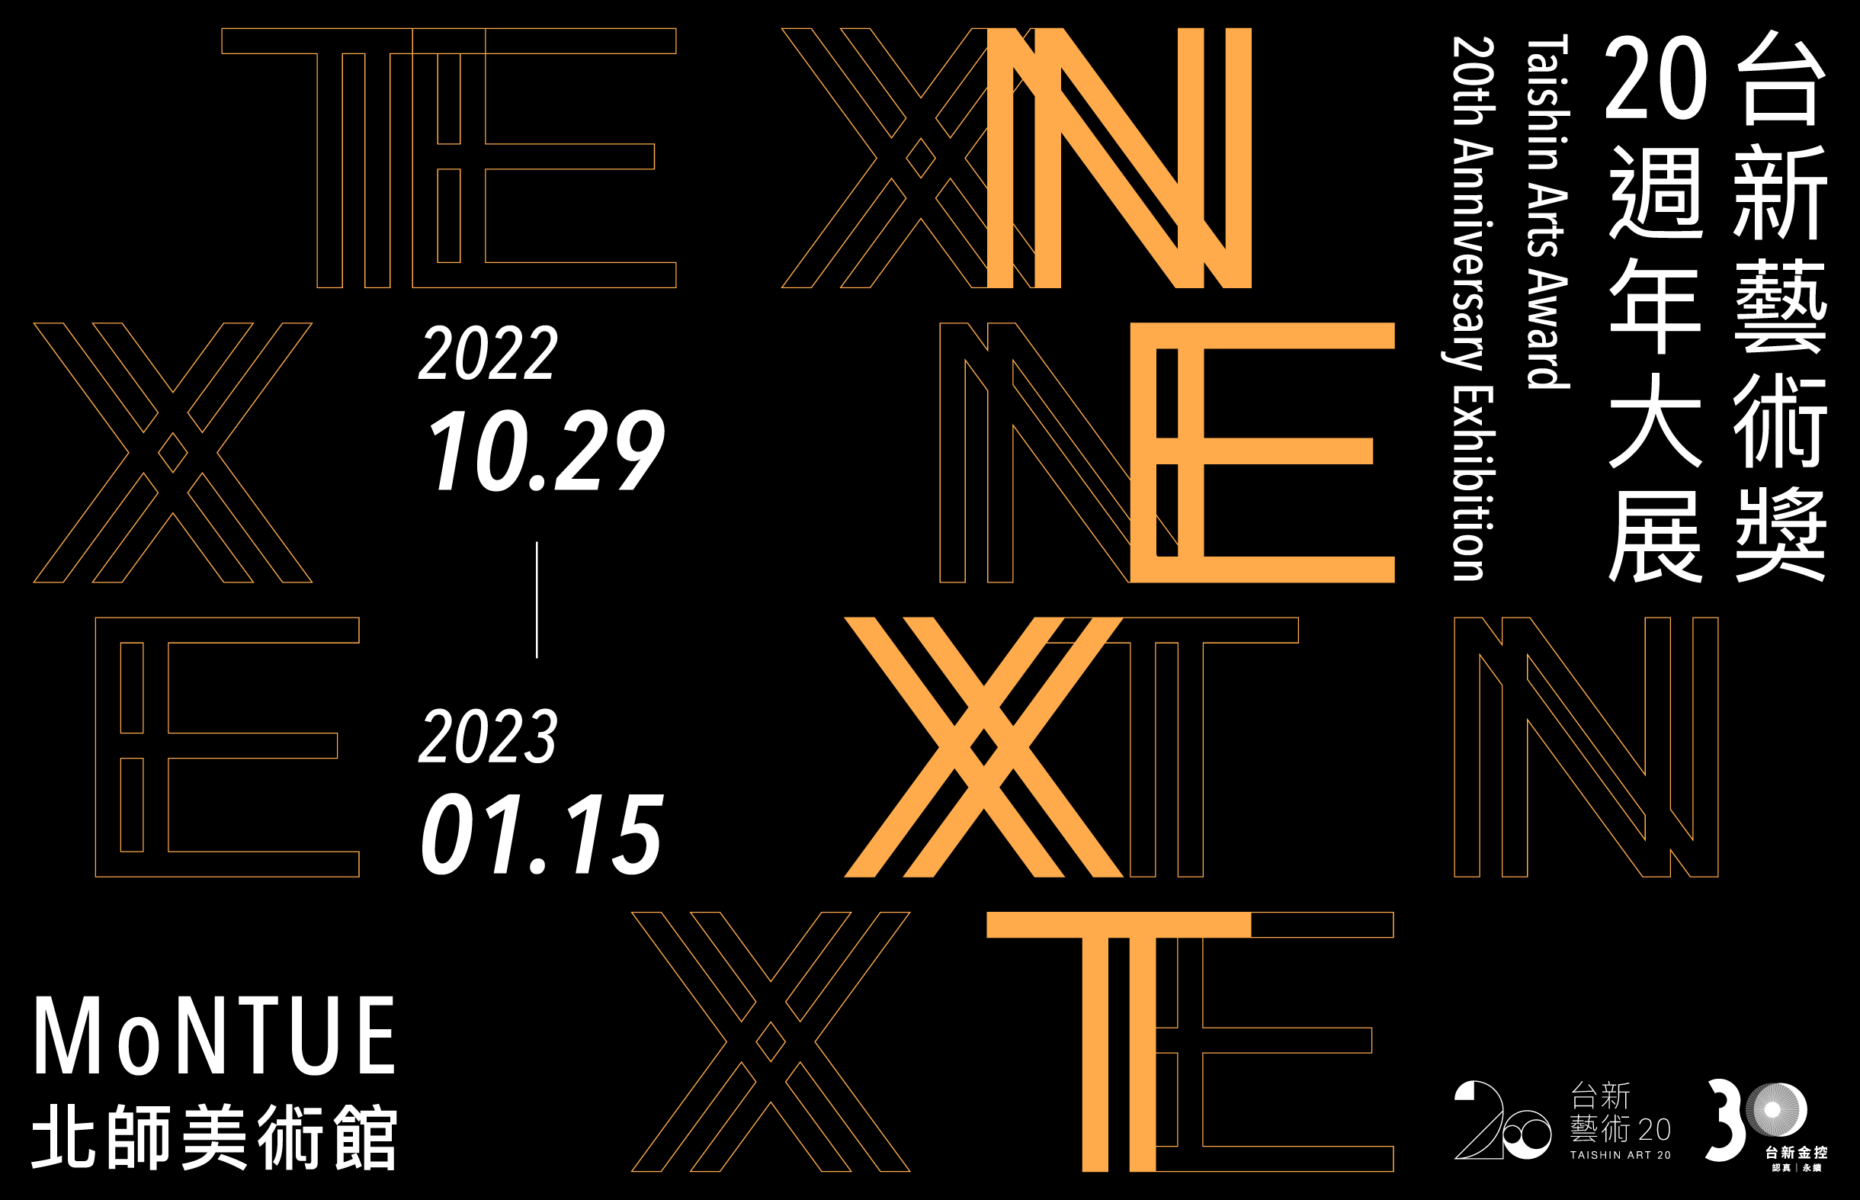 NEXT——台新藝術獎20週年大展